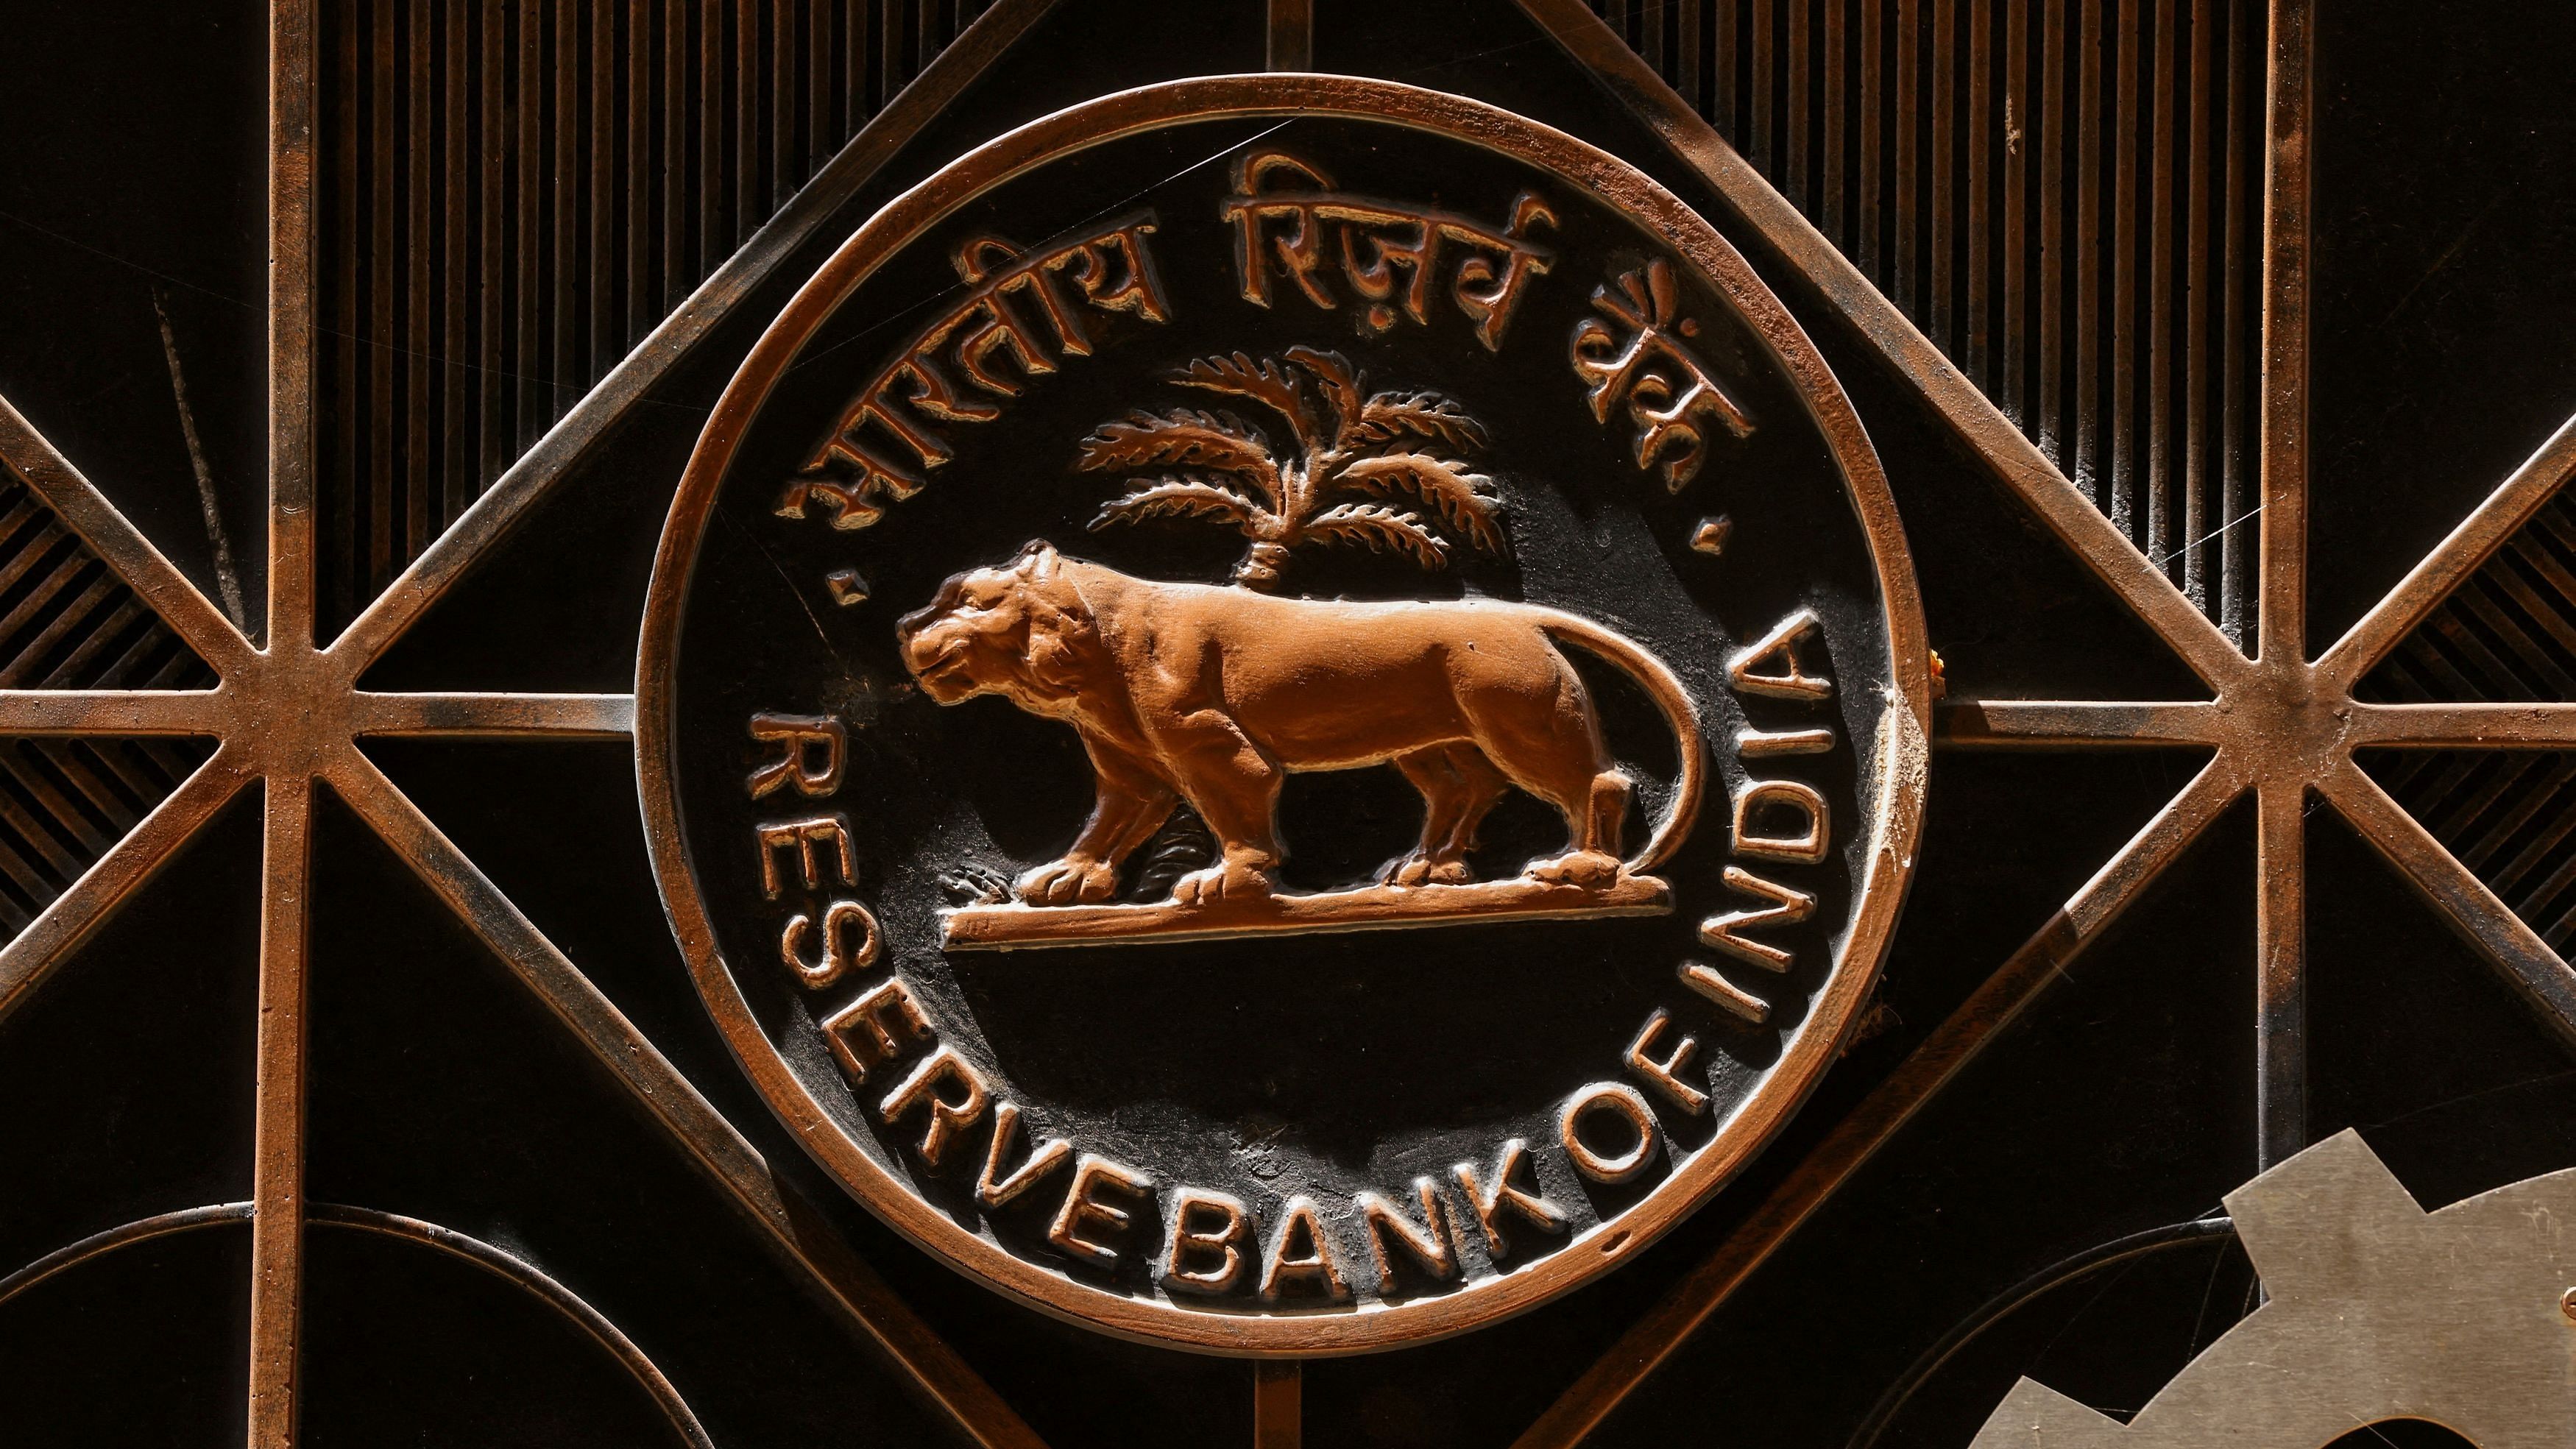 <div class="paragraphs"><p>A Reserve Bank of India (RBI) logo.&nbsp;</p></div>